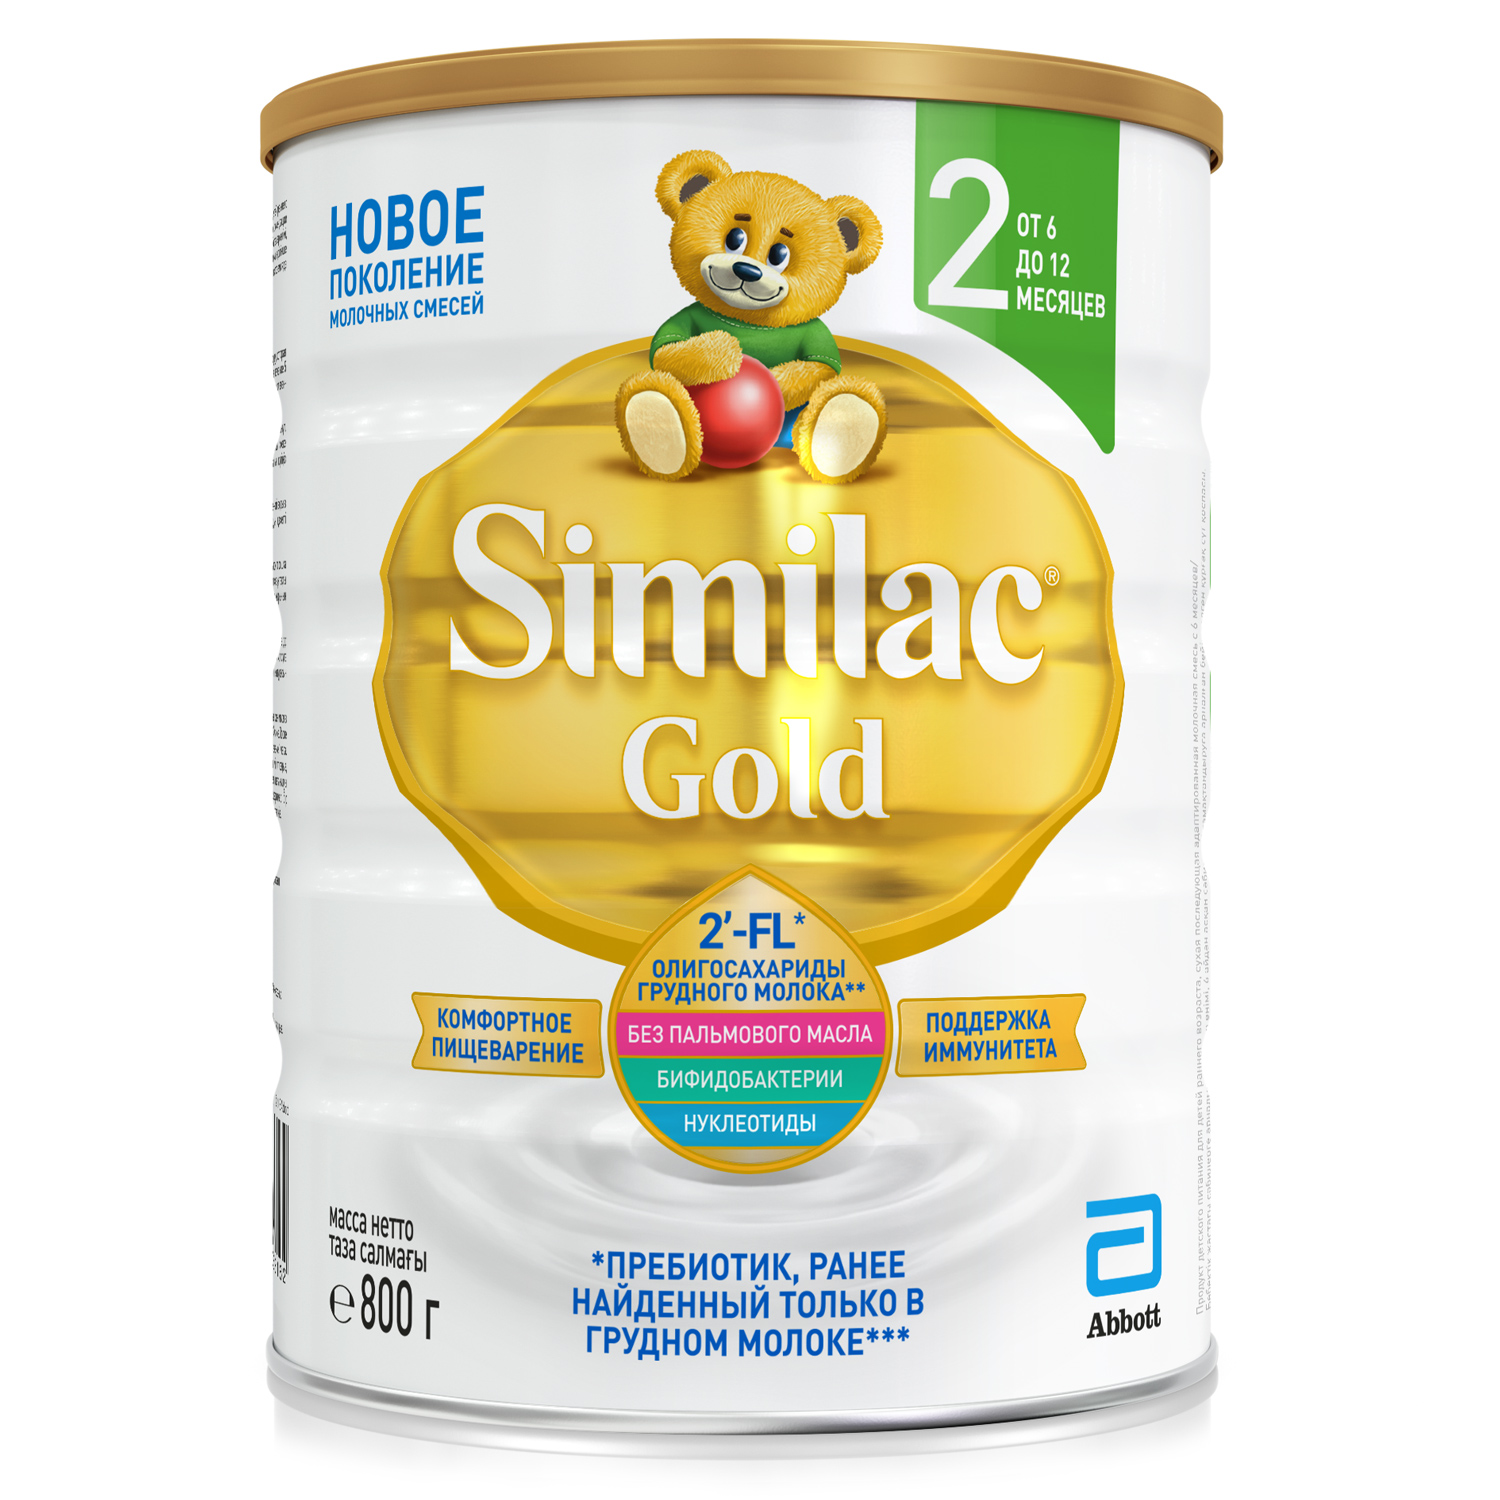 Суха молочна суміш Similac Gold 2, 800 г - фото 1